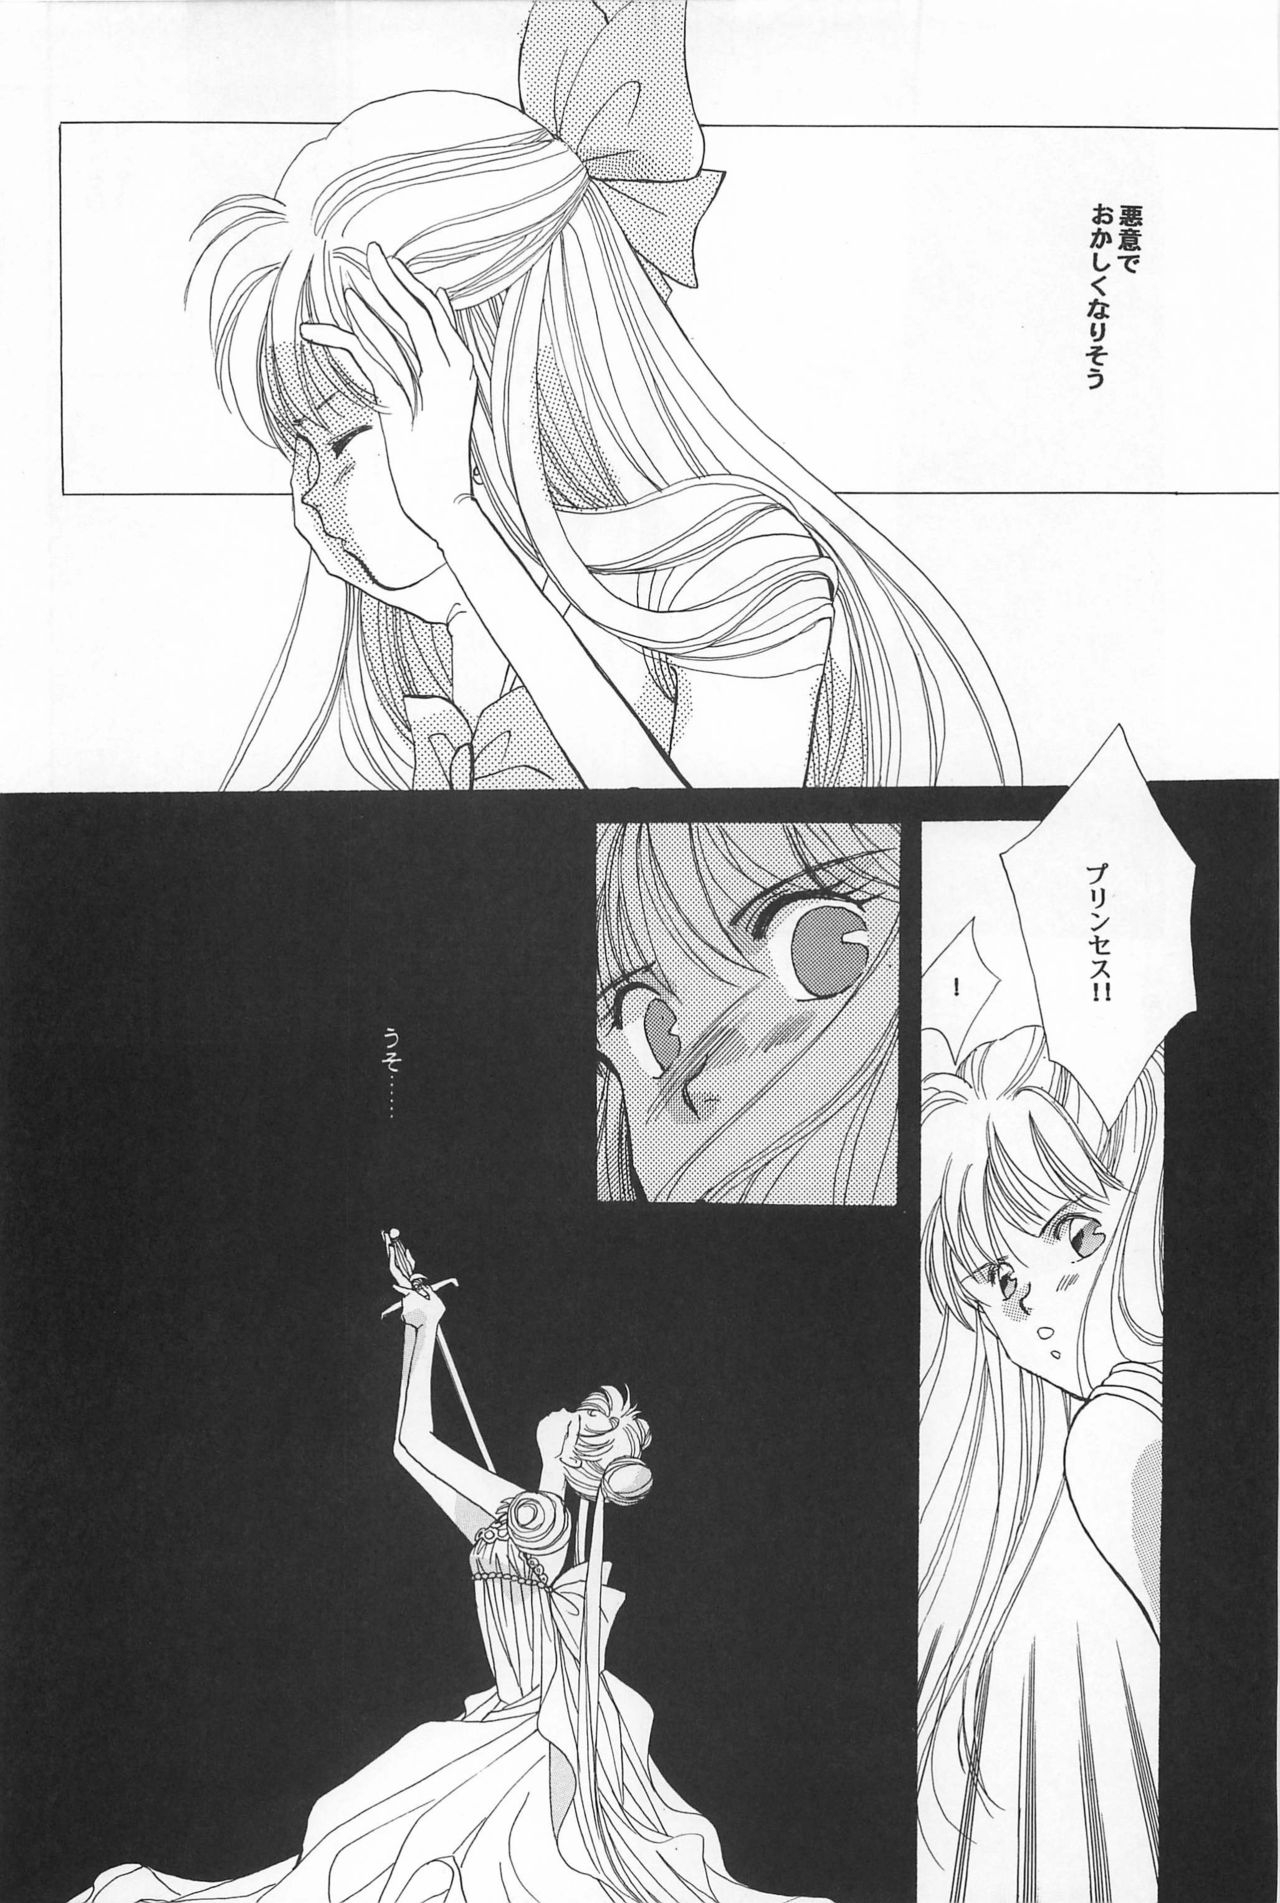 [Hello World (Muttri Moony)] Kaze no You ni Yume no You ni - Sailor Moon Collection (Sailor Moon) 105